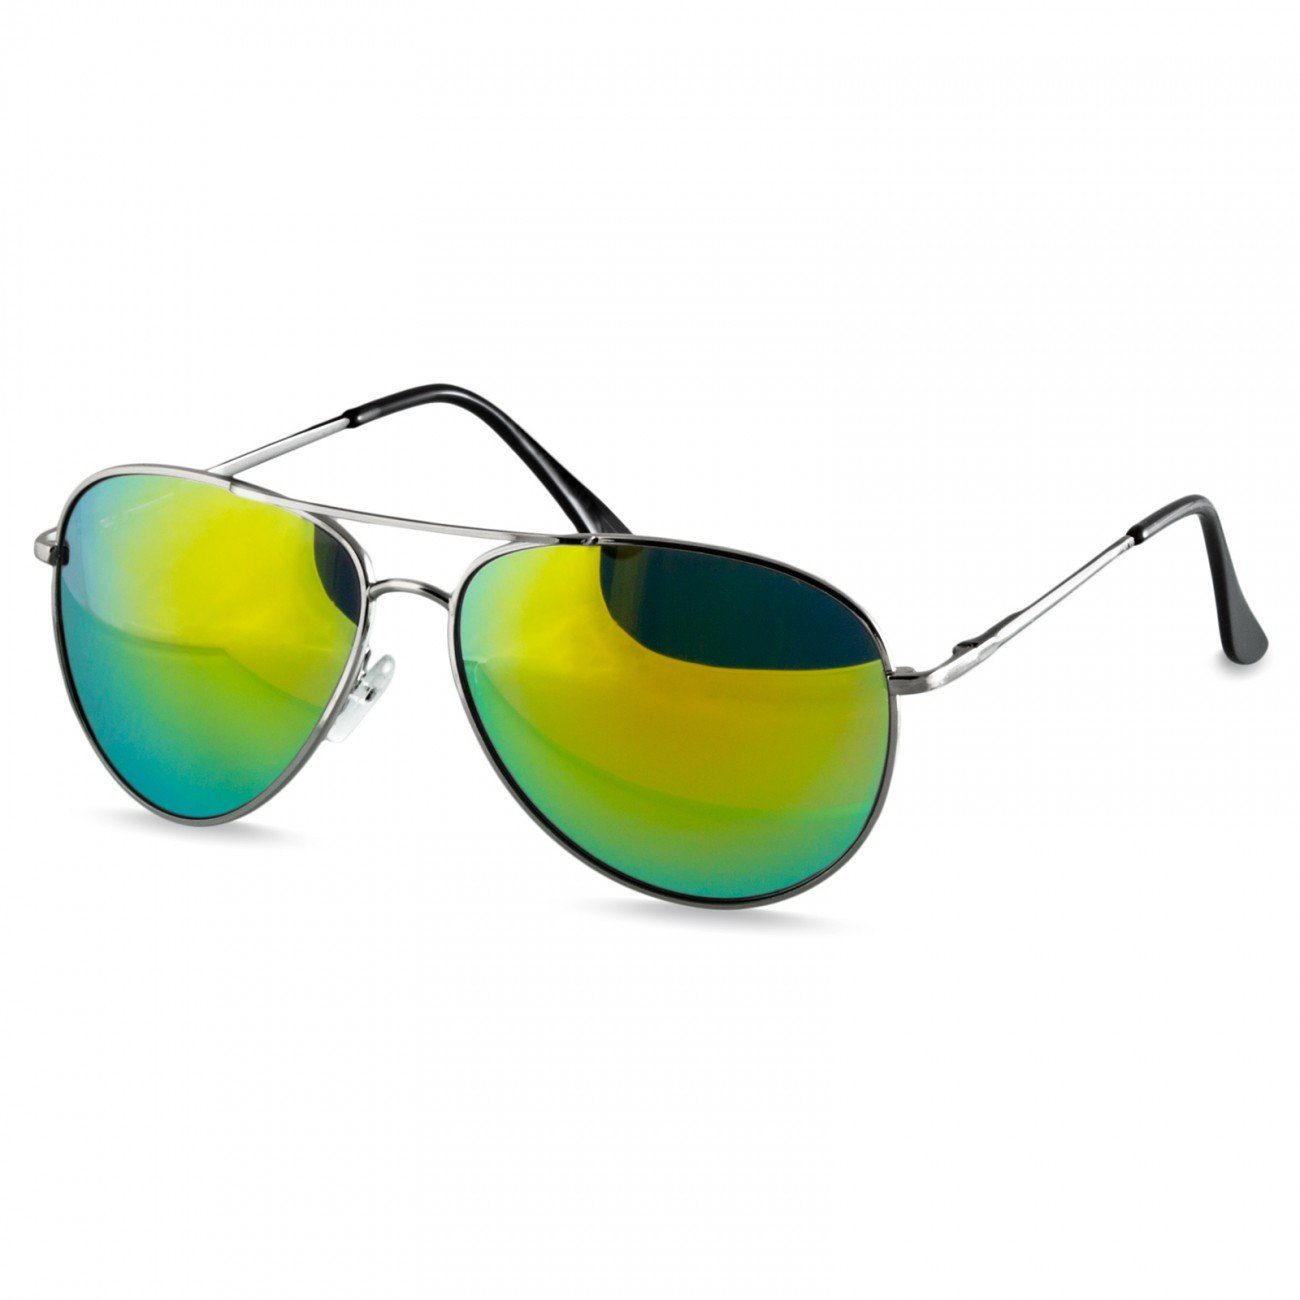 Pilotenbrille klassische Sonnenbrille / Caspar gold Unisex verspiegelt Retro silber SG013 grün